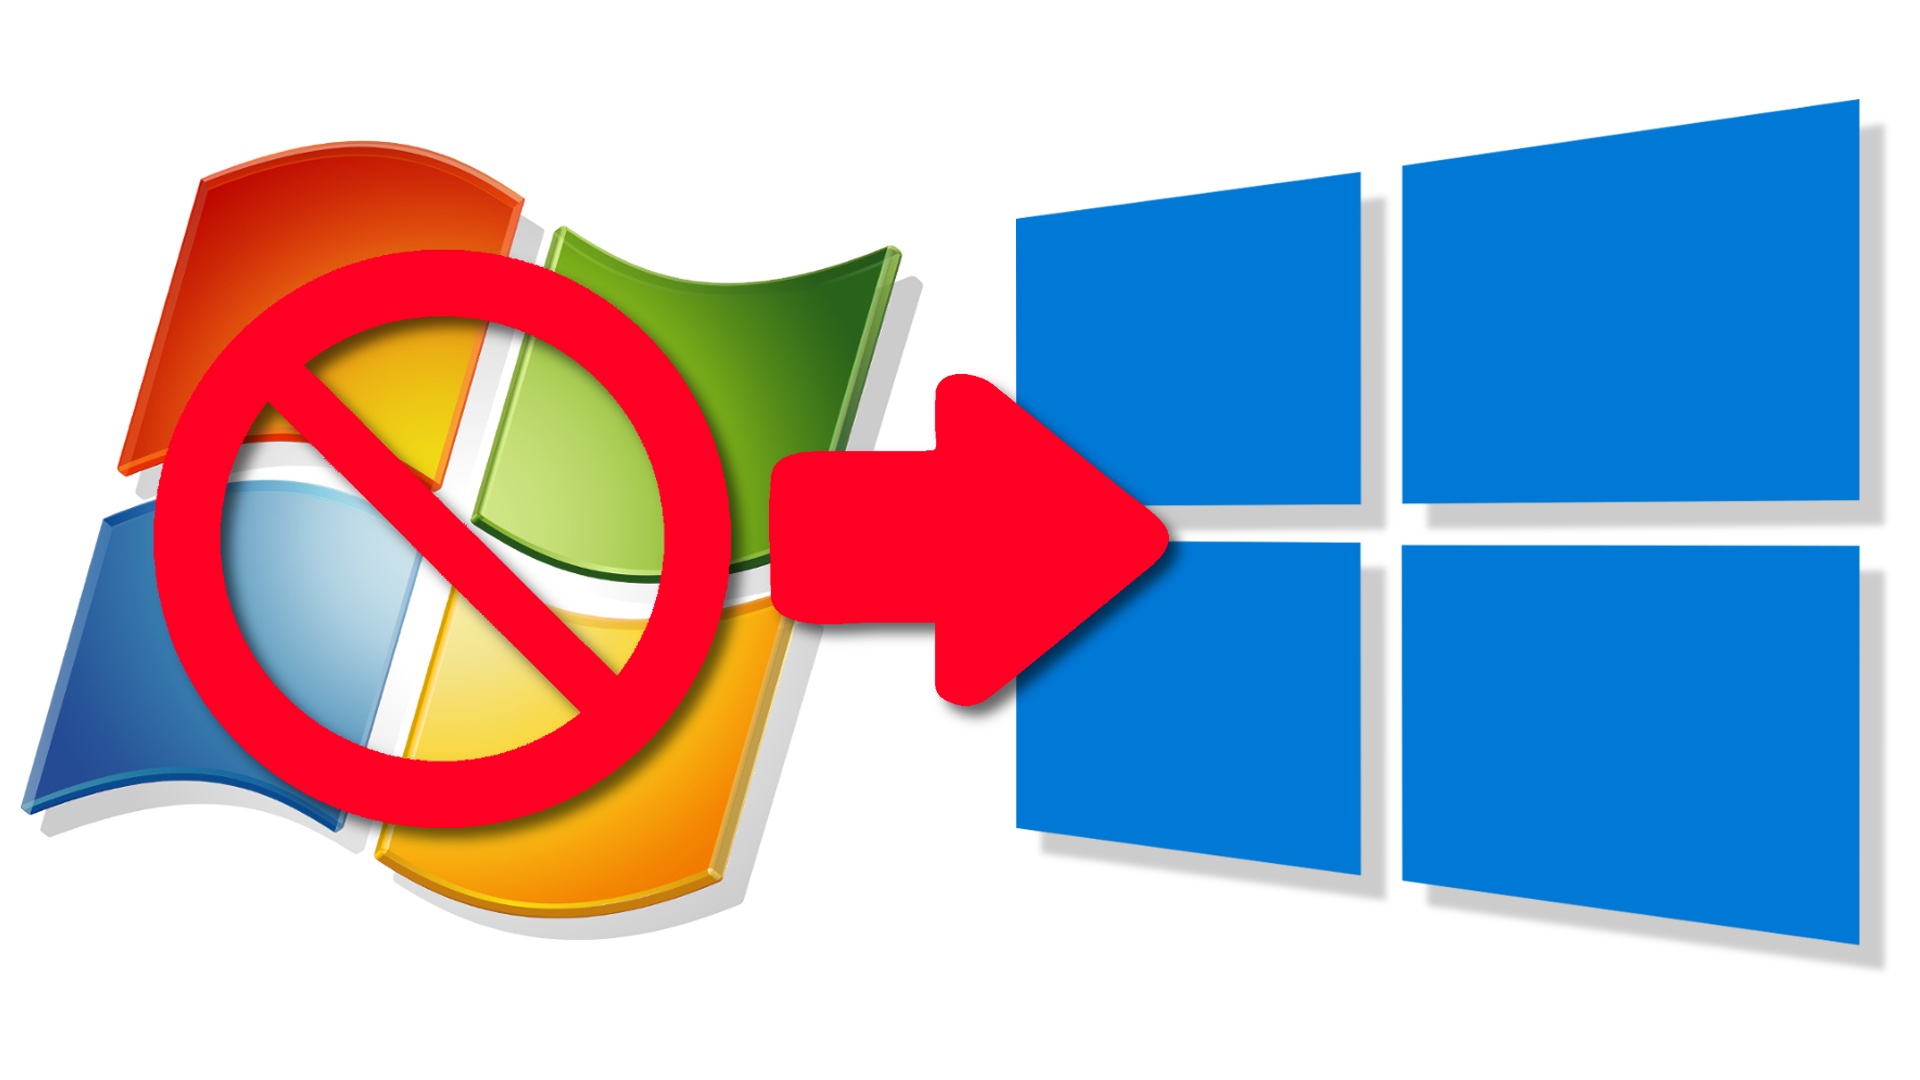 Kostenloses Upgrade Auf Windows 10 Umstieg Von Windows 7 Anleitung